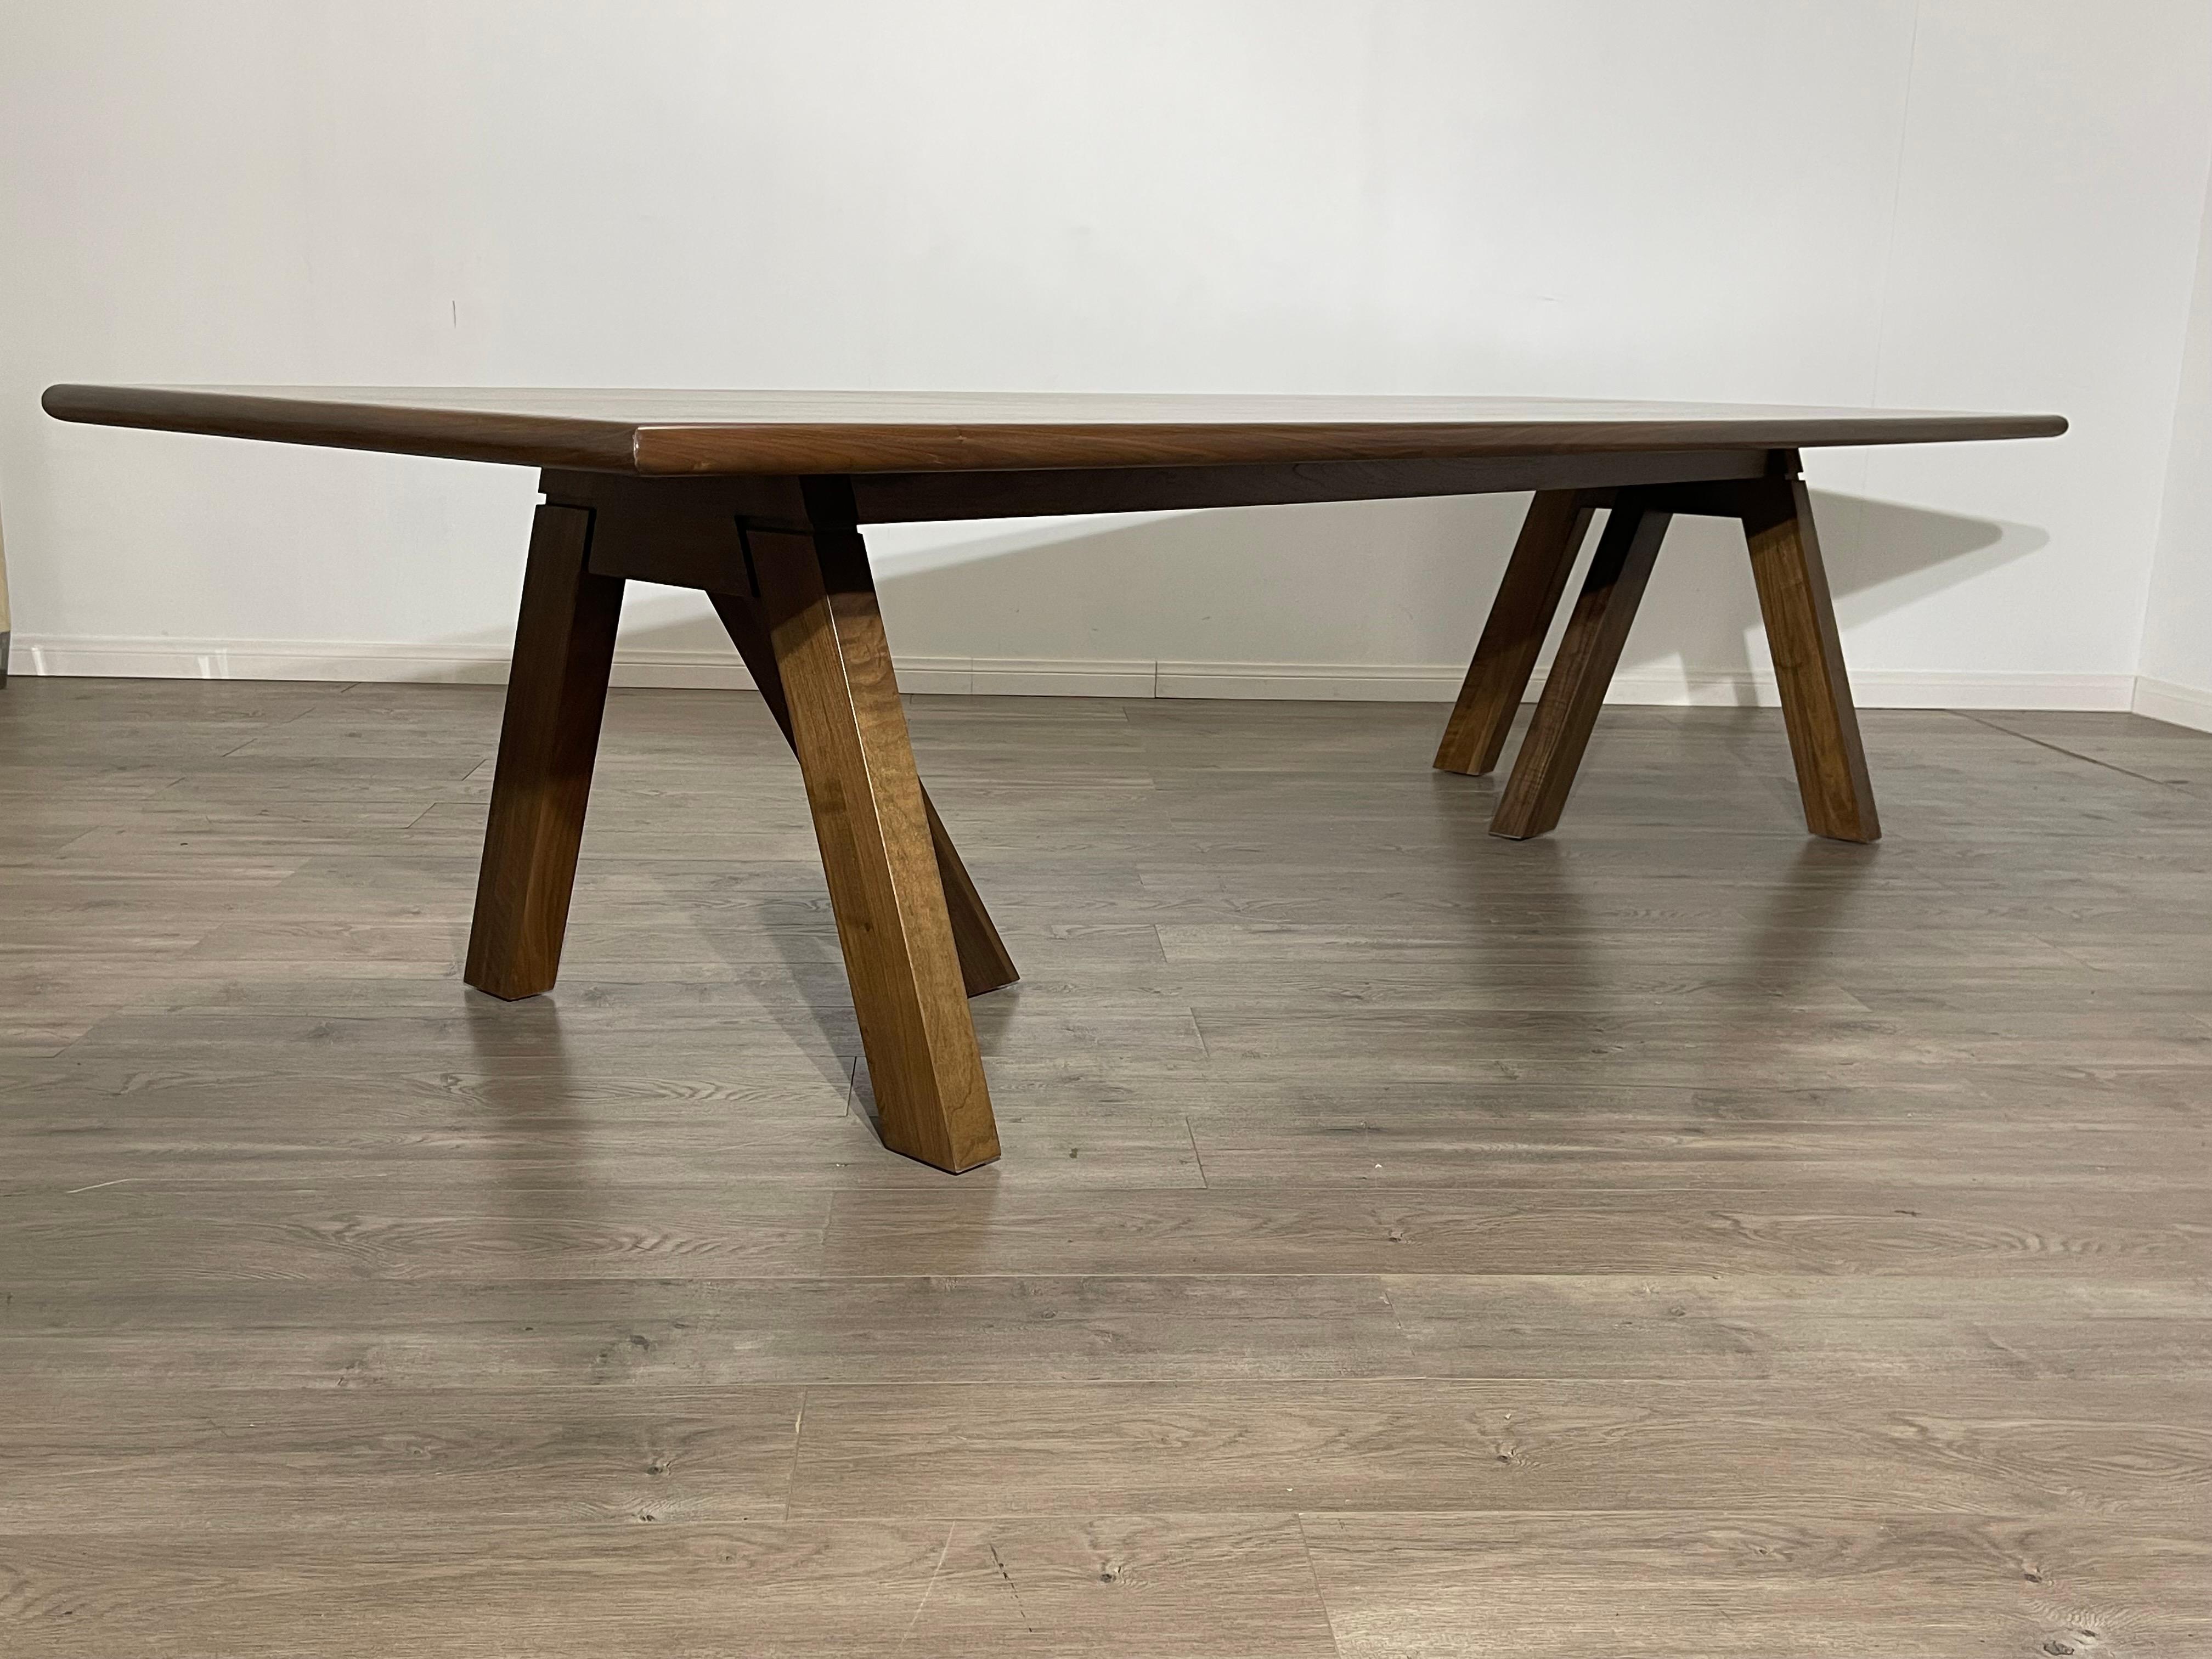 Une table de salle à manger ou de bureau moderne et sur mesure. 
Mettant en valeur la richesse du bois, cette table de salle à manger moderne et élégante est un élément exceptionnel pour votre maison ou votre bureau moderne/contemporain. 
Posée sur